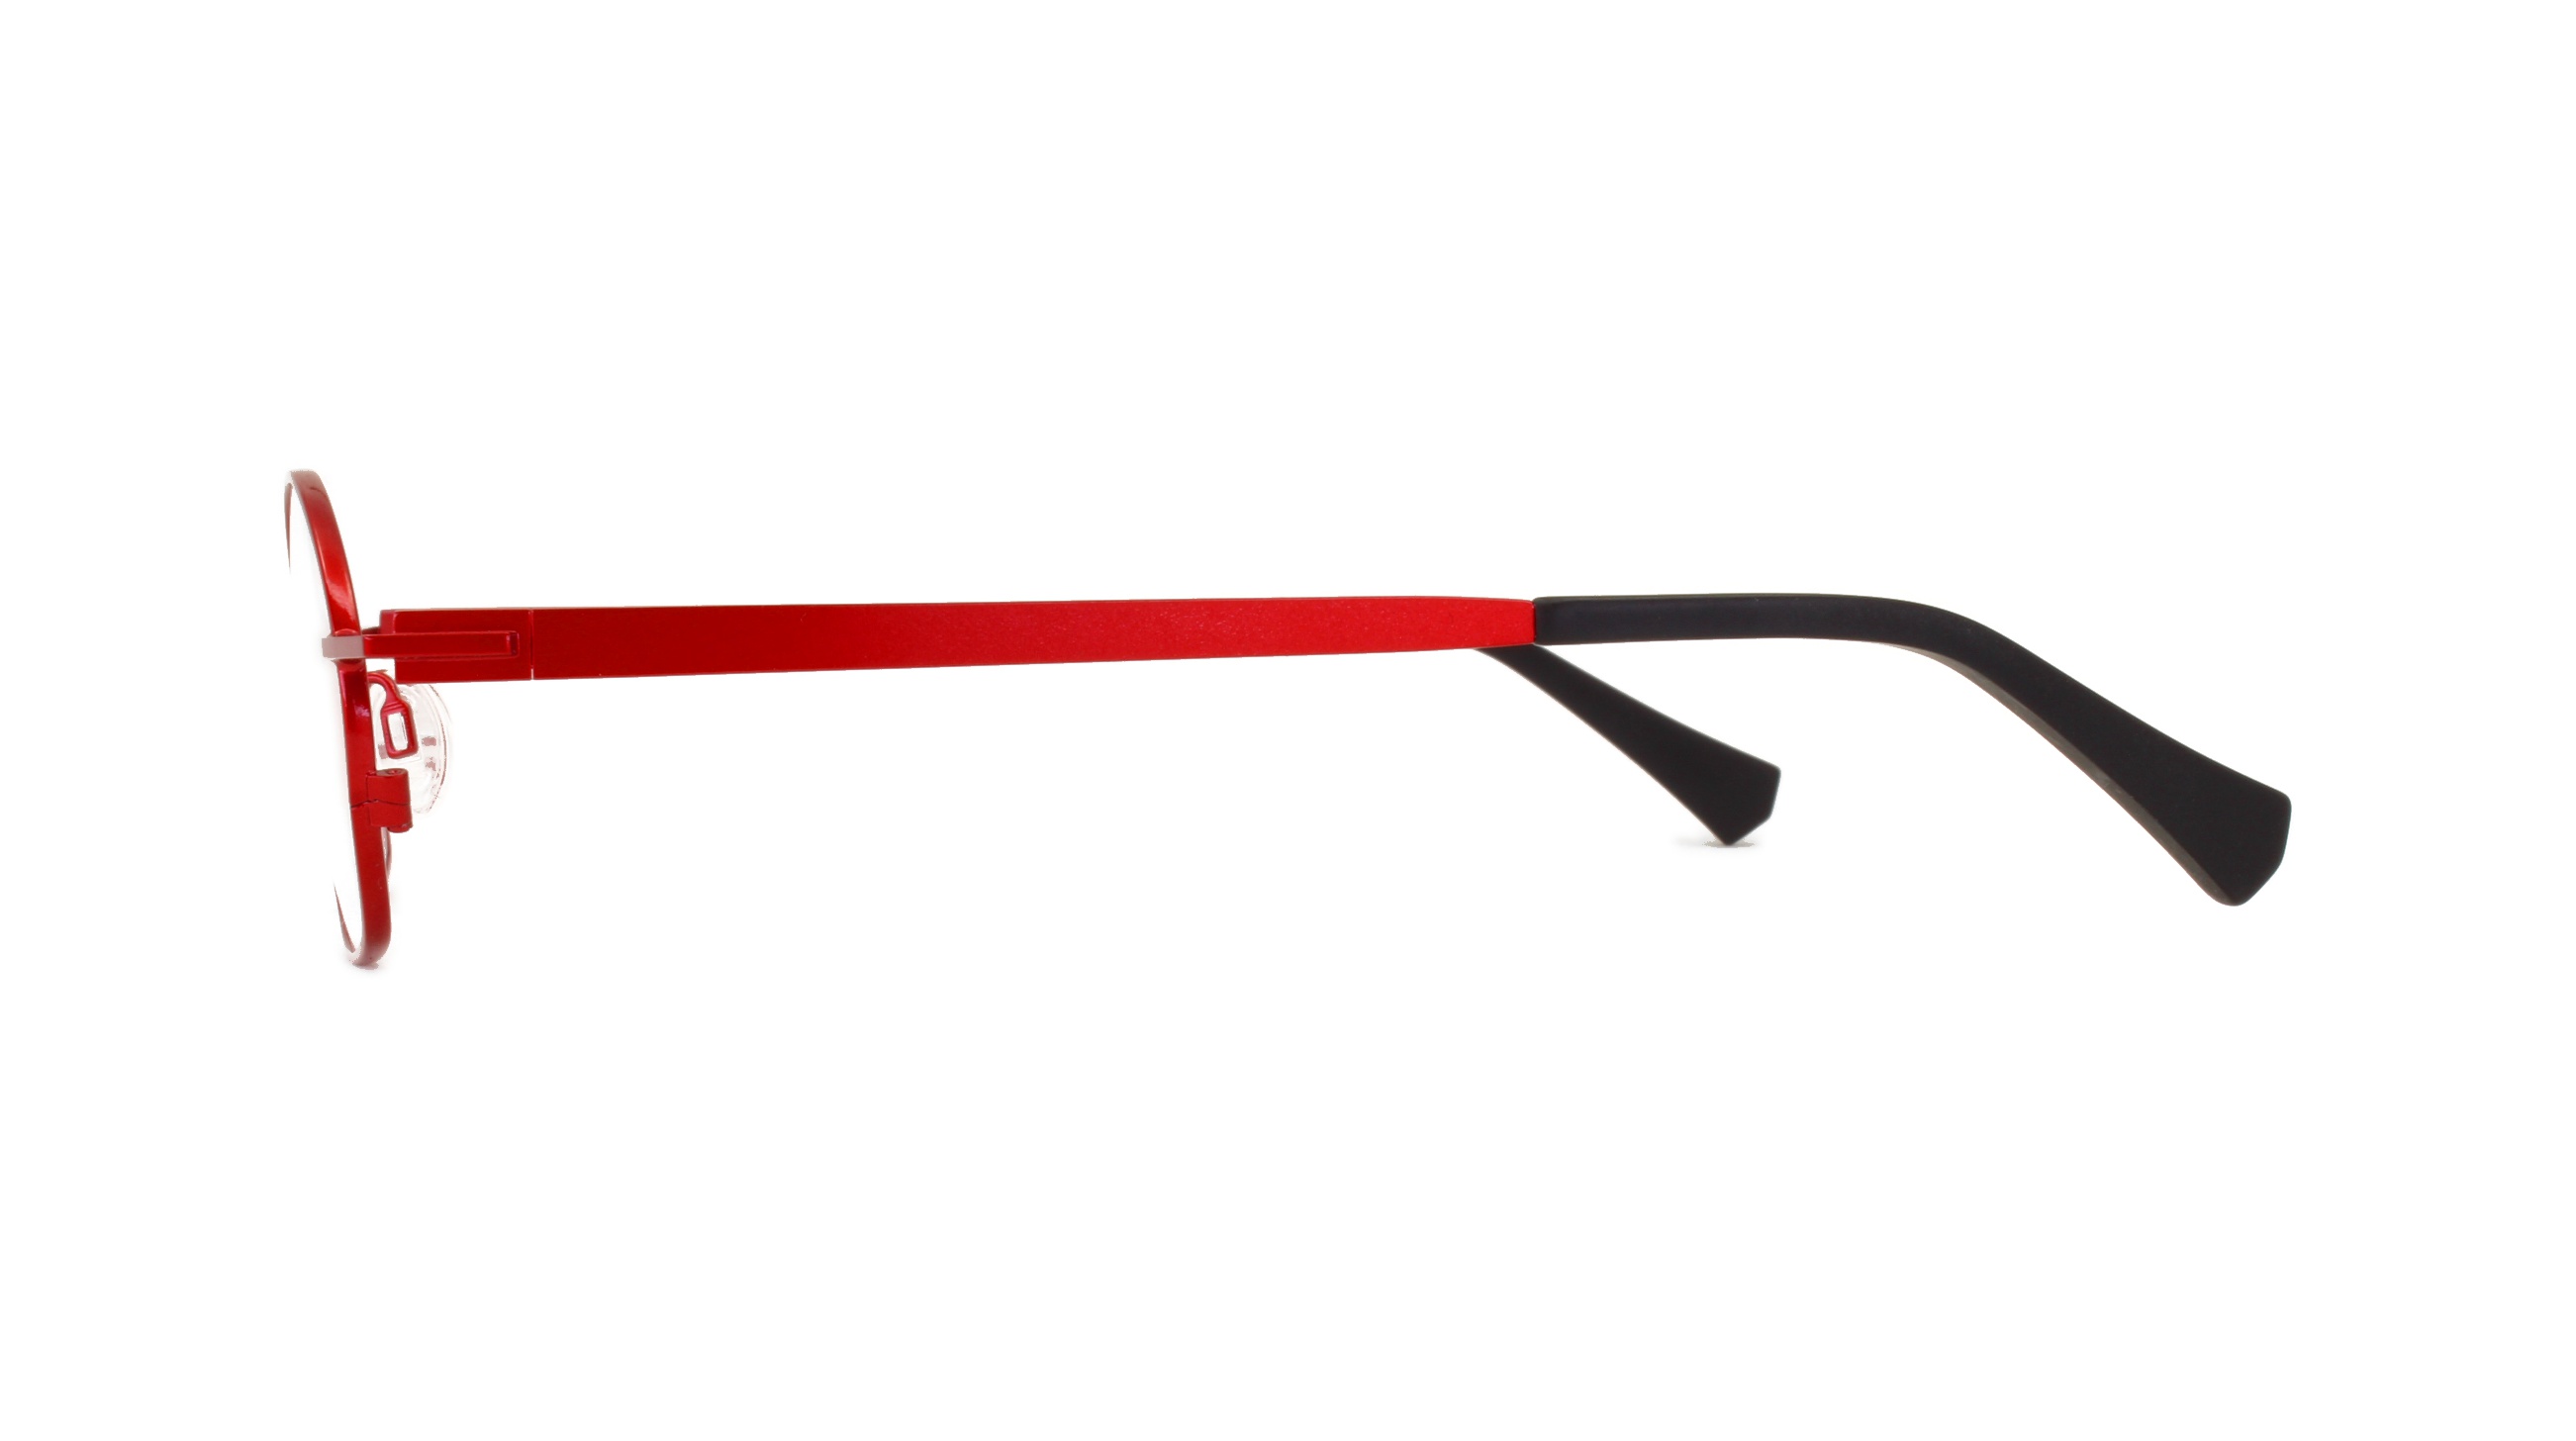 Paire de lunettes de vue Matttew-eyewear Tulip couleur rouge - Côté droit - Doyle